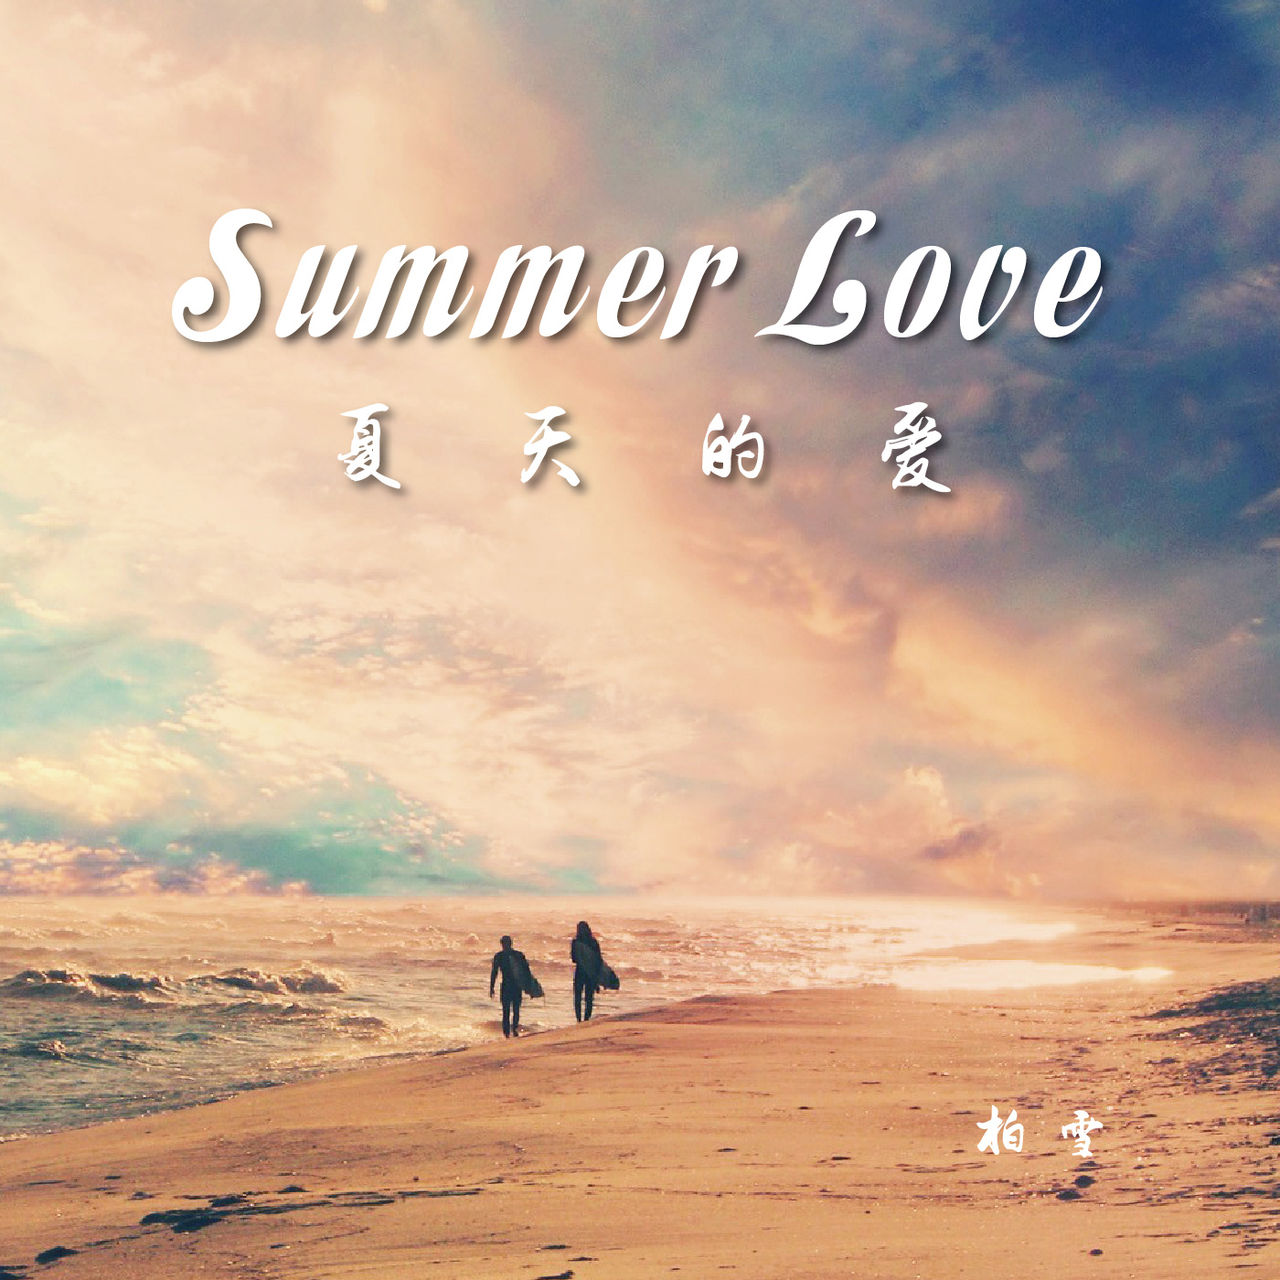 Summer Love(柏雪演唱歌曲)